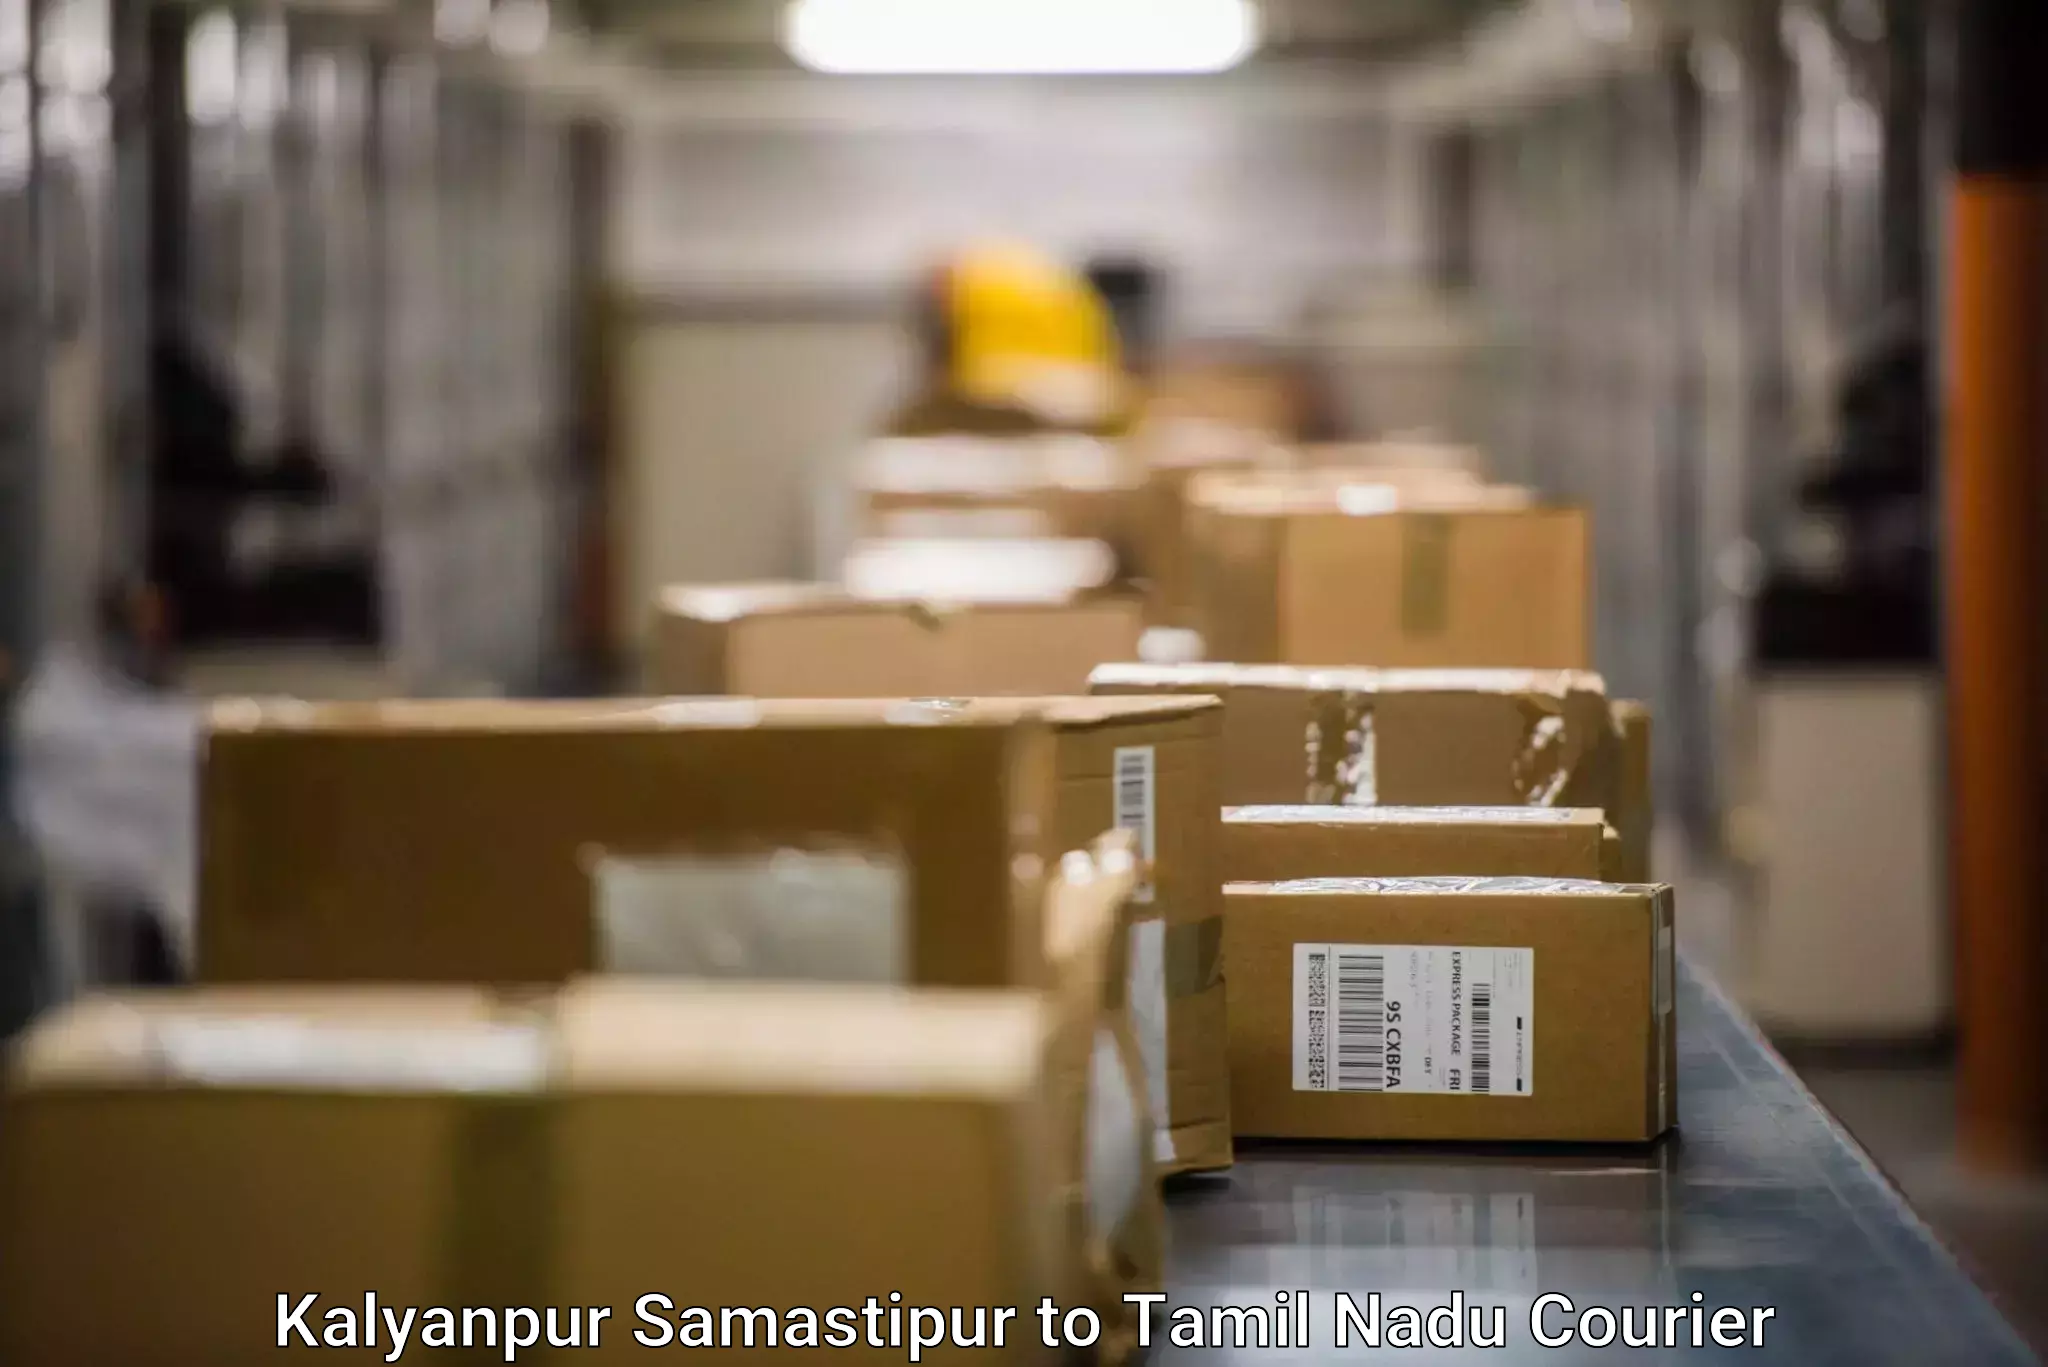 Large package courier Kalyanpur Samastipur to Nagapattinam